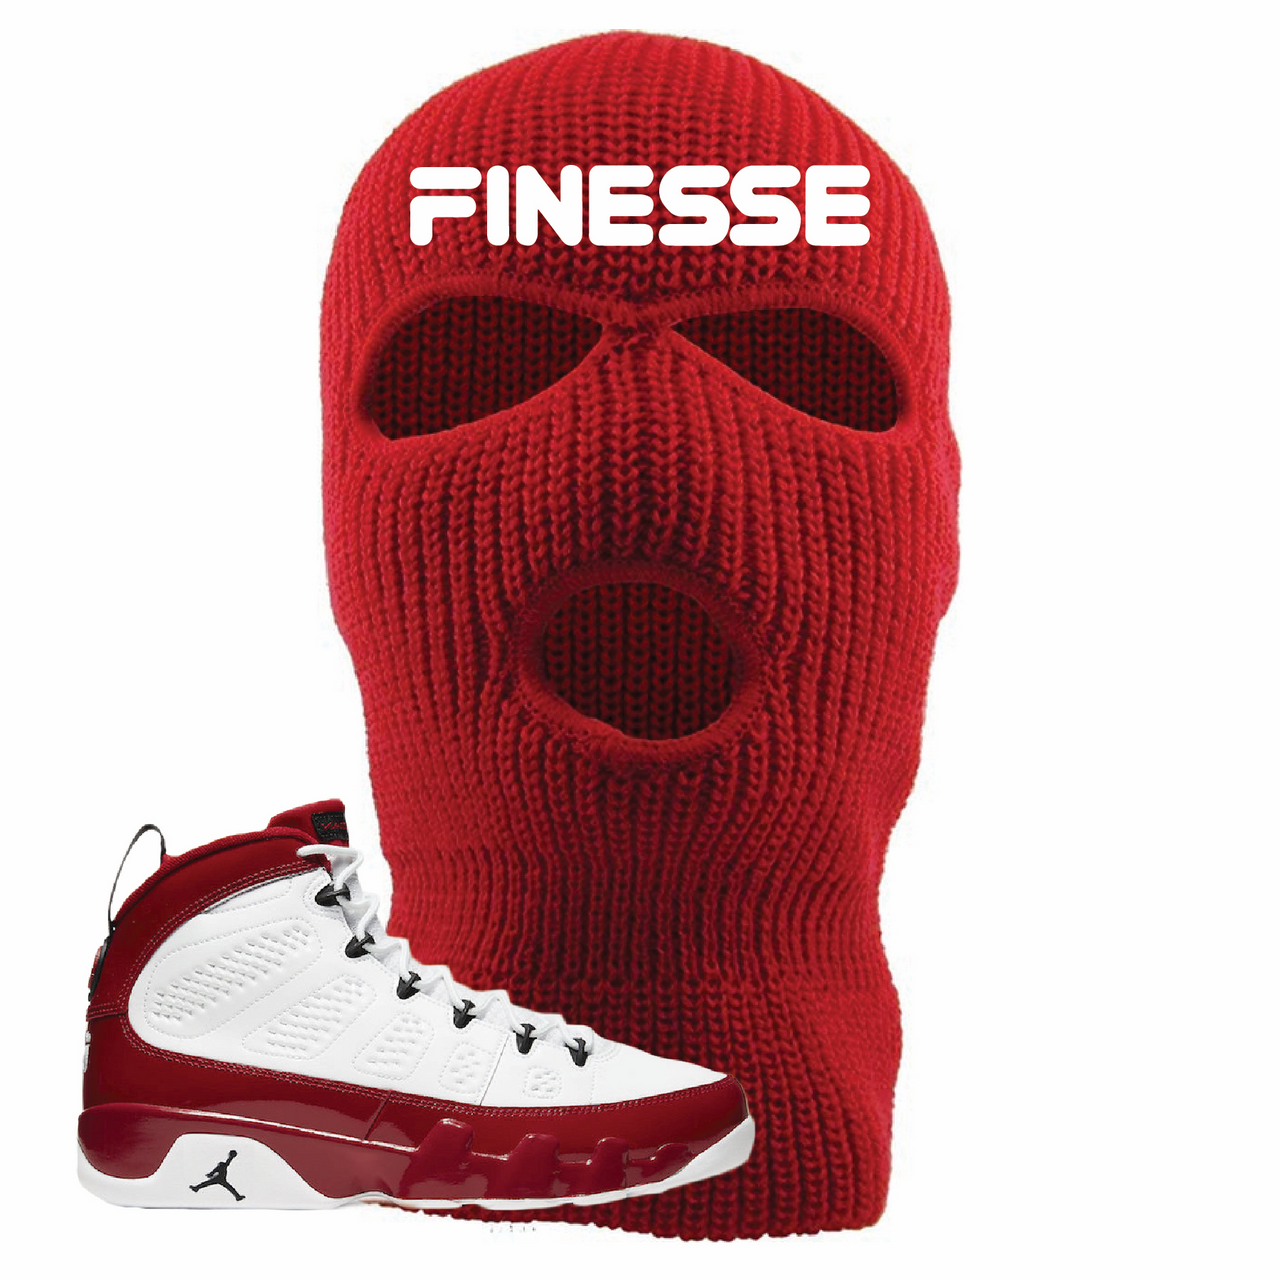 Jordan 9 Gym Red Finesse Red Sneaker Hook Up Ski Mask